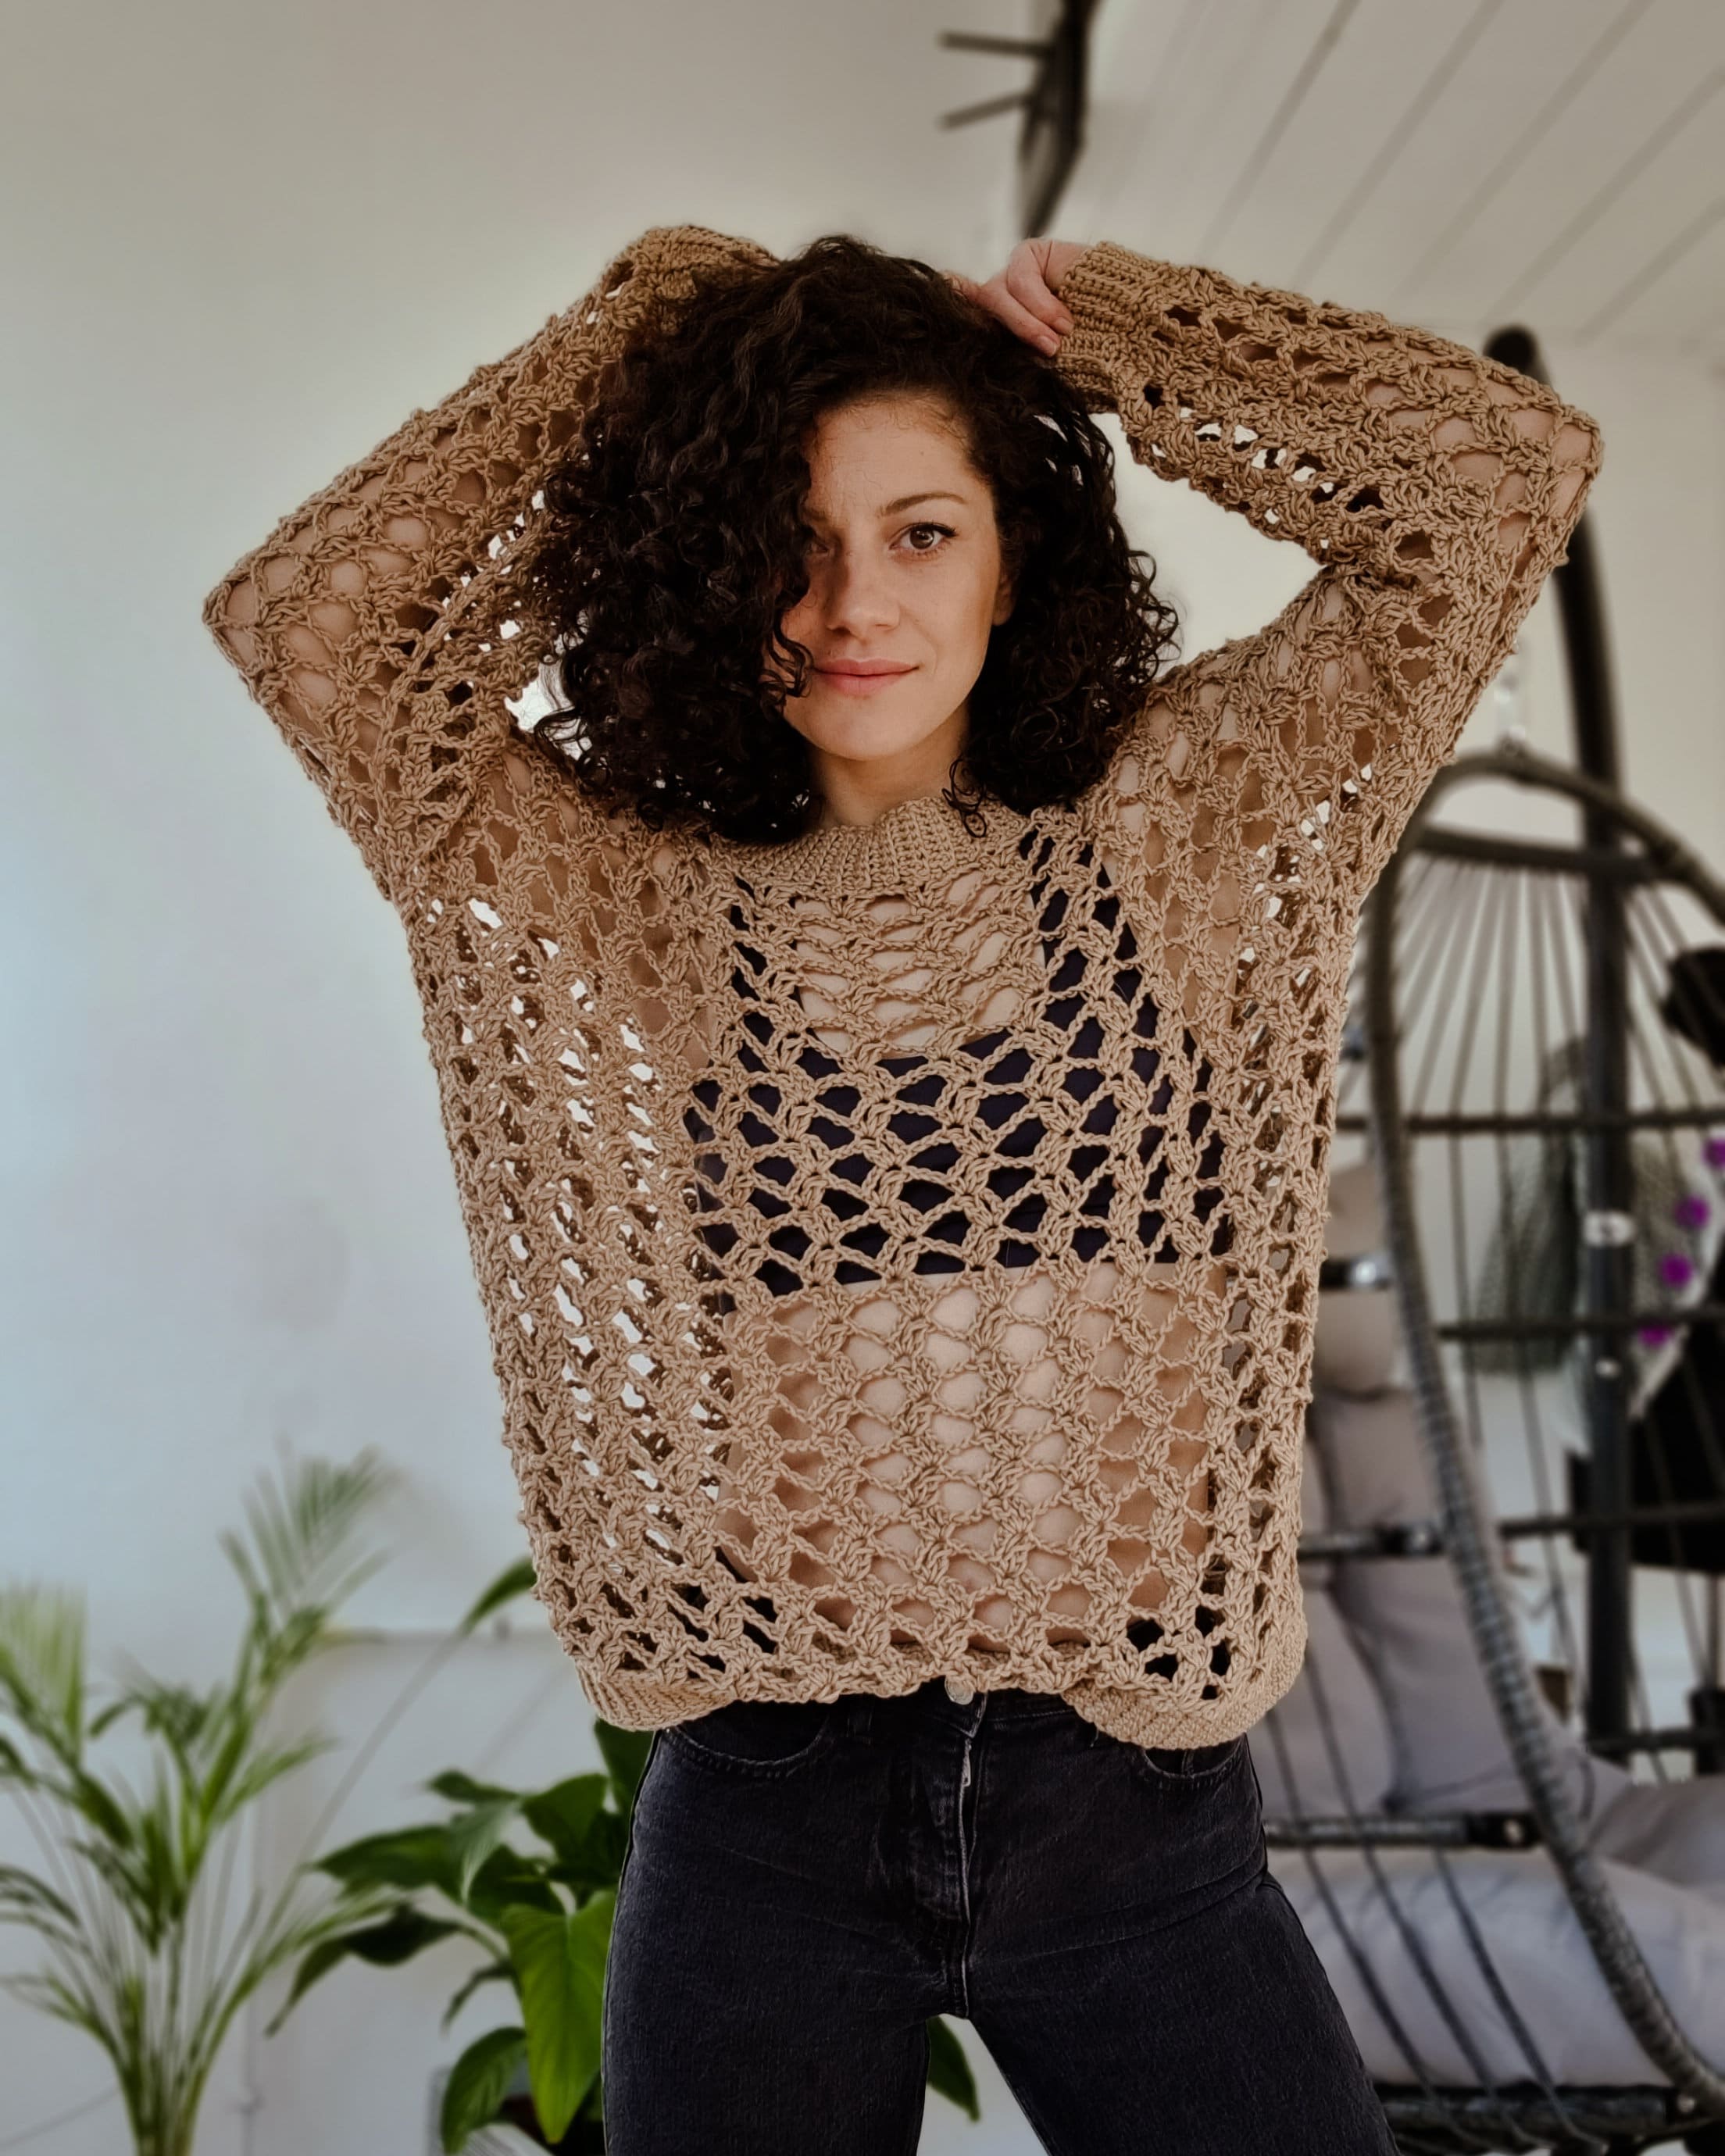 The Sweetpea Top PDF DIGITAL DOWNLOAD Crochet Pattern, Women's Cute Lace  Crochet Top Pattern. Light Spring Crochet Top, Summer Crochet Top 